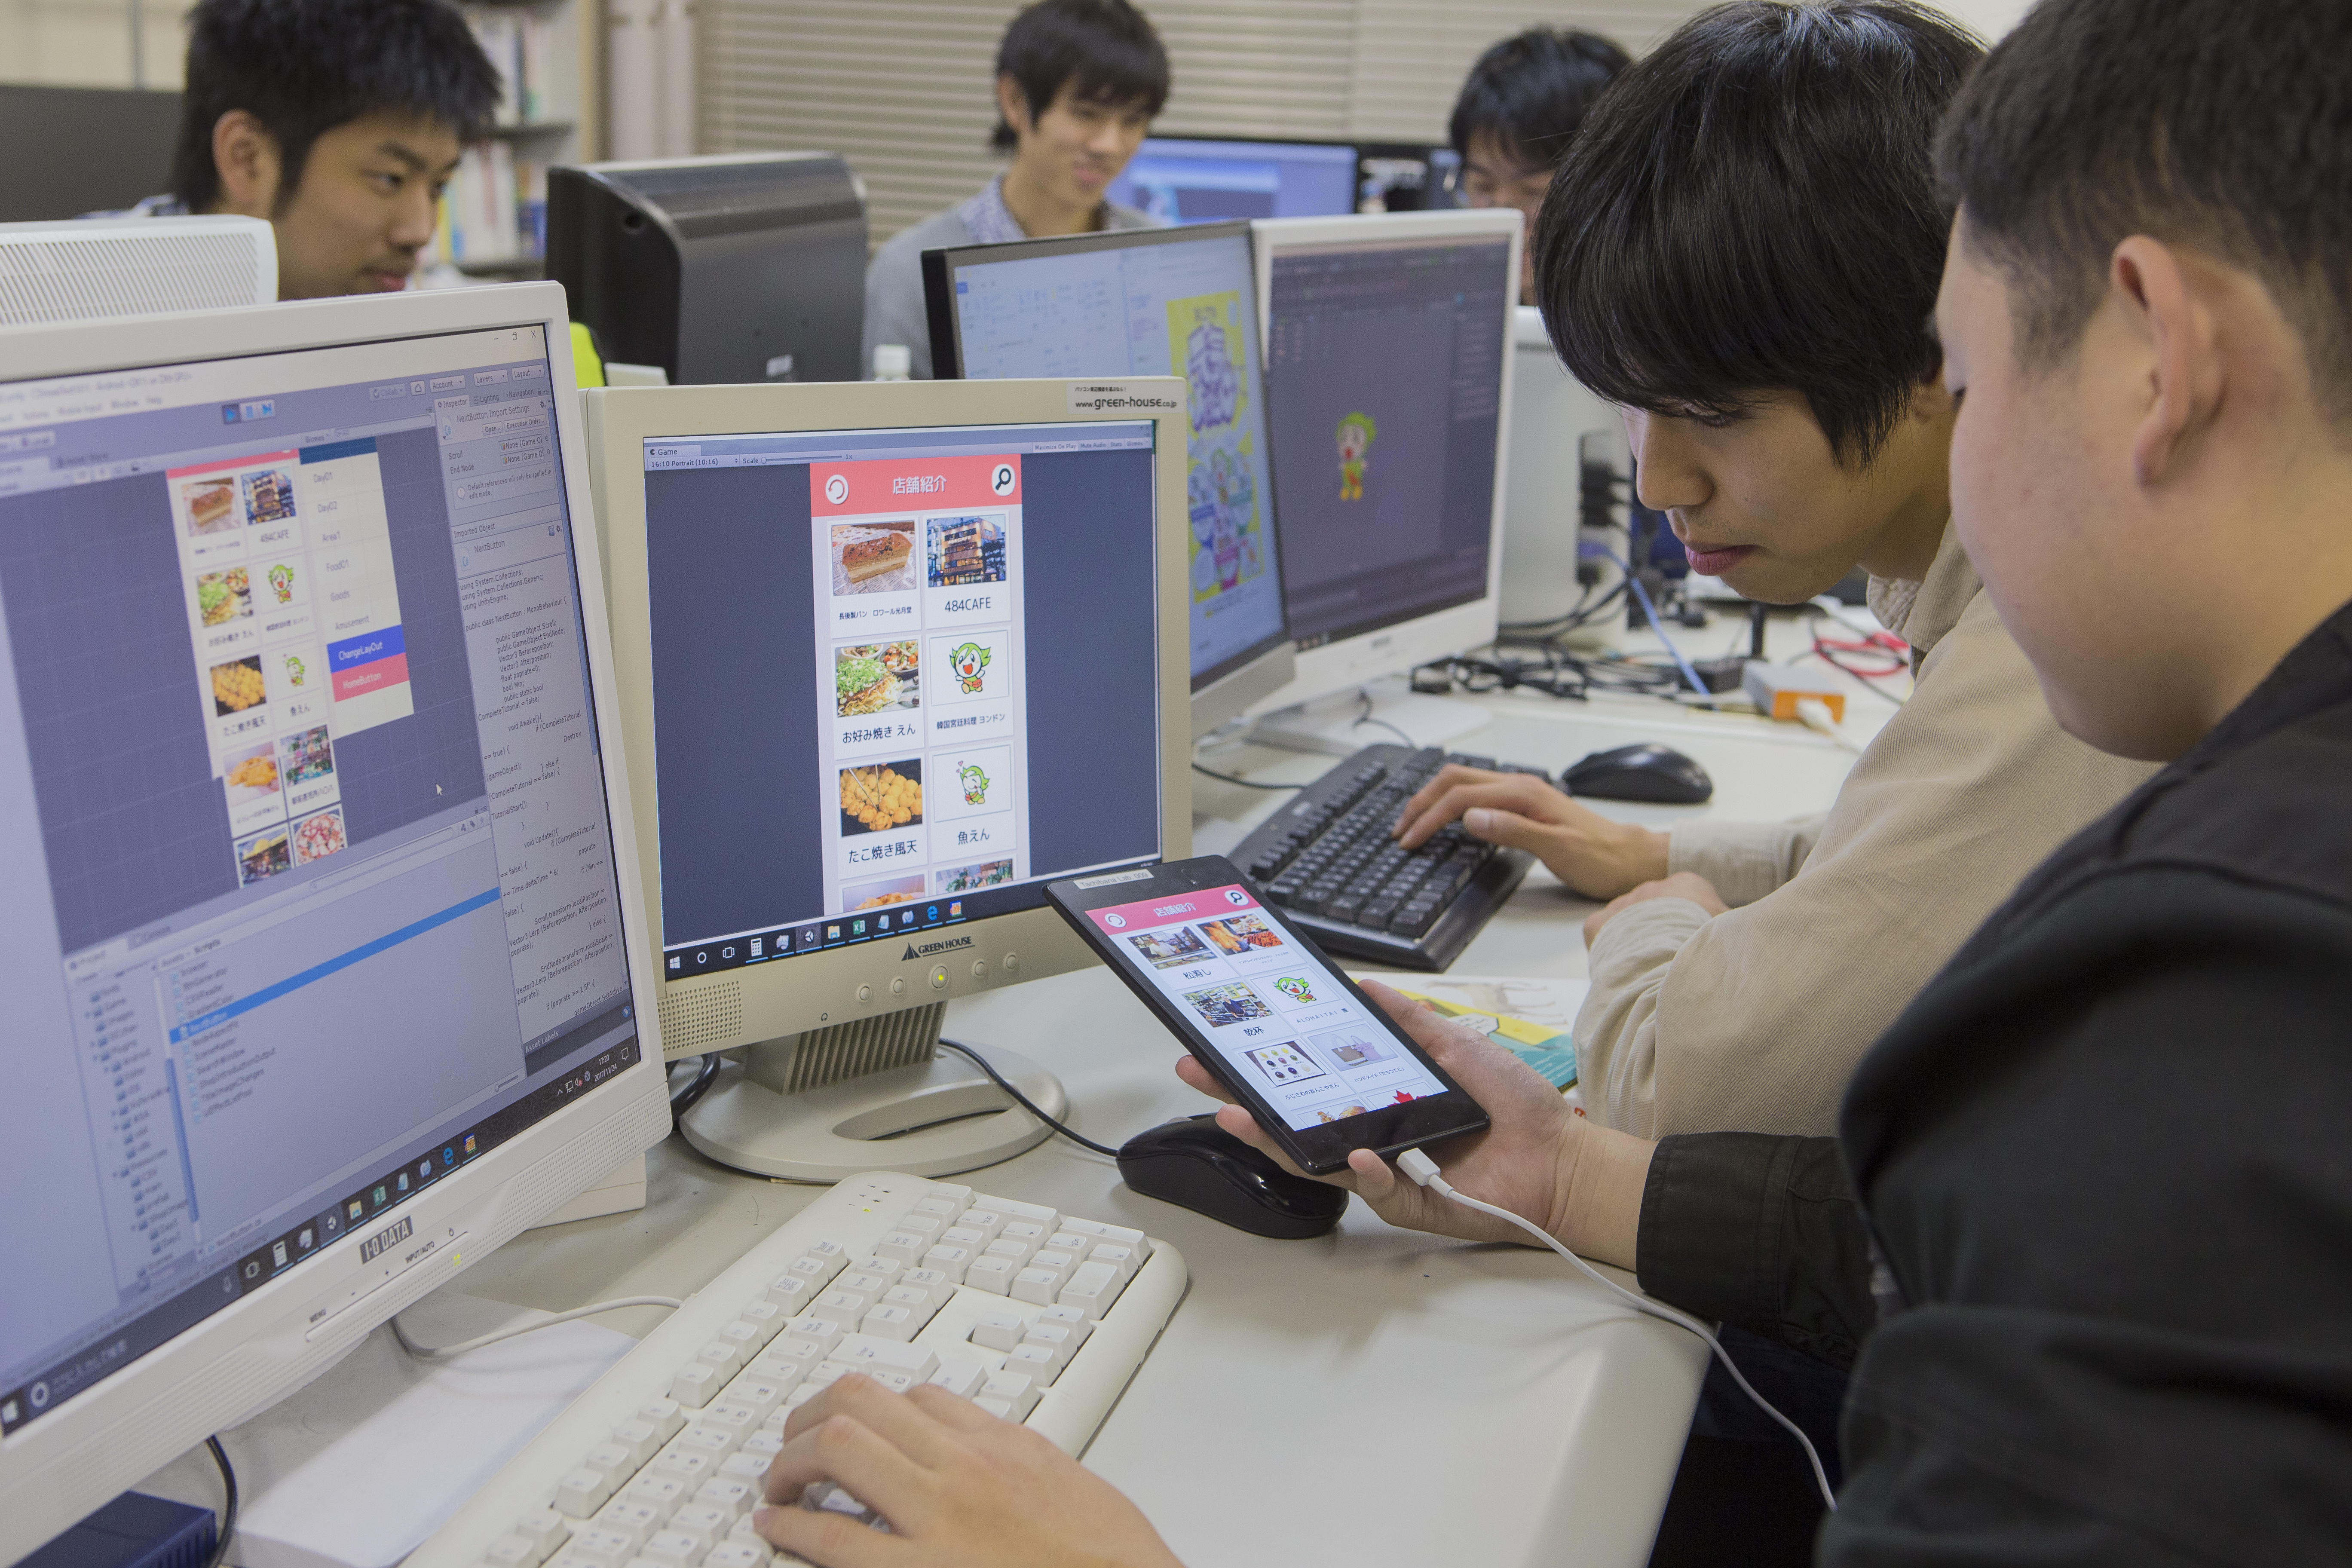 湘南工科大学×Unity Technologies -- ゲームエンジンUnityを活用したアプリ開発で「地域に貢献できる即戦力の人材」を育成